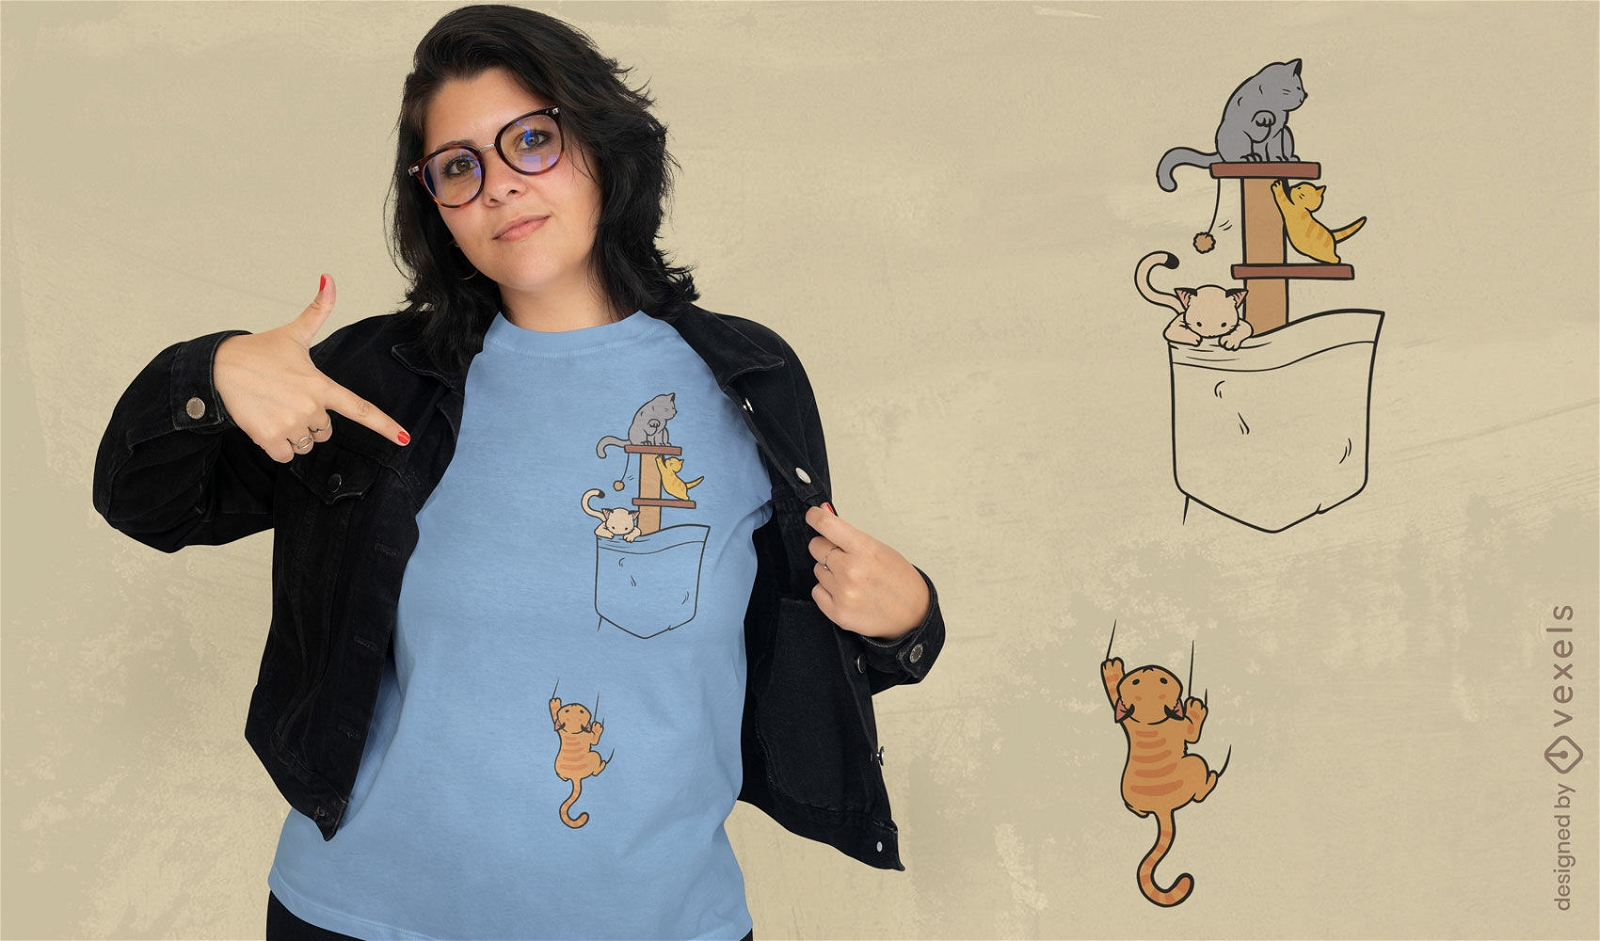 Katzen Klettern In Taschen-T-Shirt-Design - Vektor Download